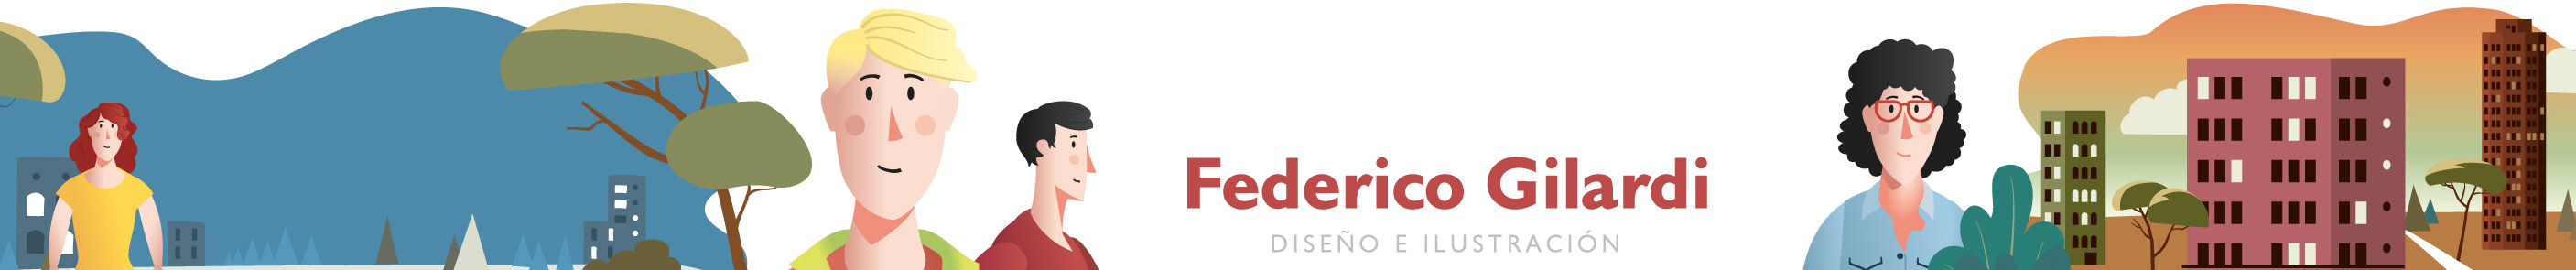 Bannière de profil de Federico Gilardi